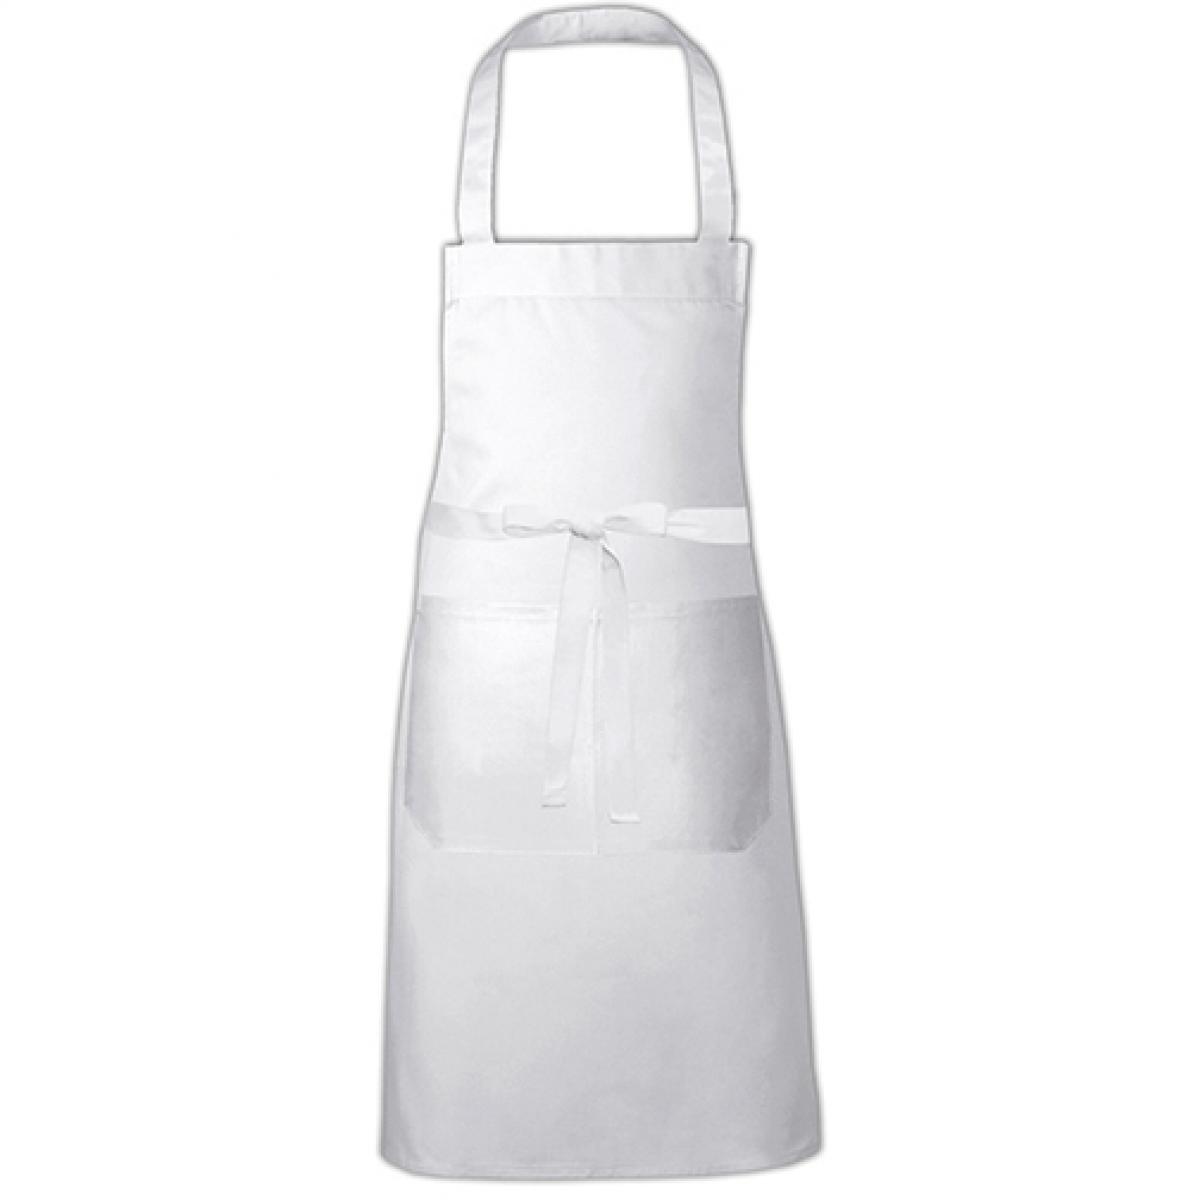 Hersteller: Link Kitchen Wear Herstellernummer: HS8073 Artikelbezeichnung: Hobby Apron - 73 x 80 cm - Waschbar bis 60 °C Farbe: White